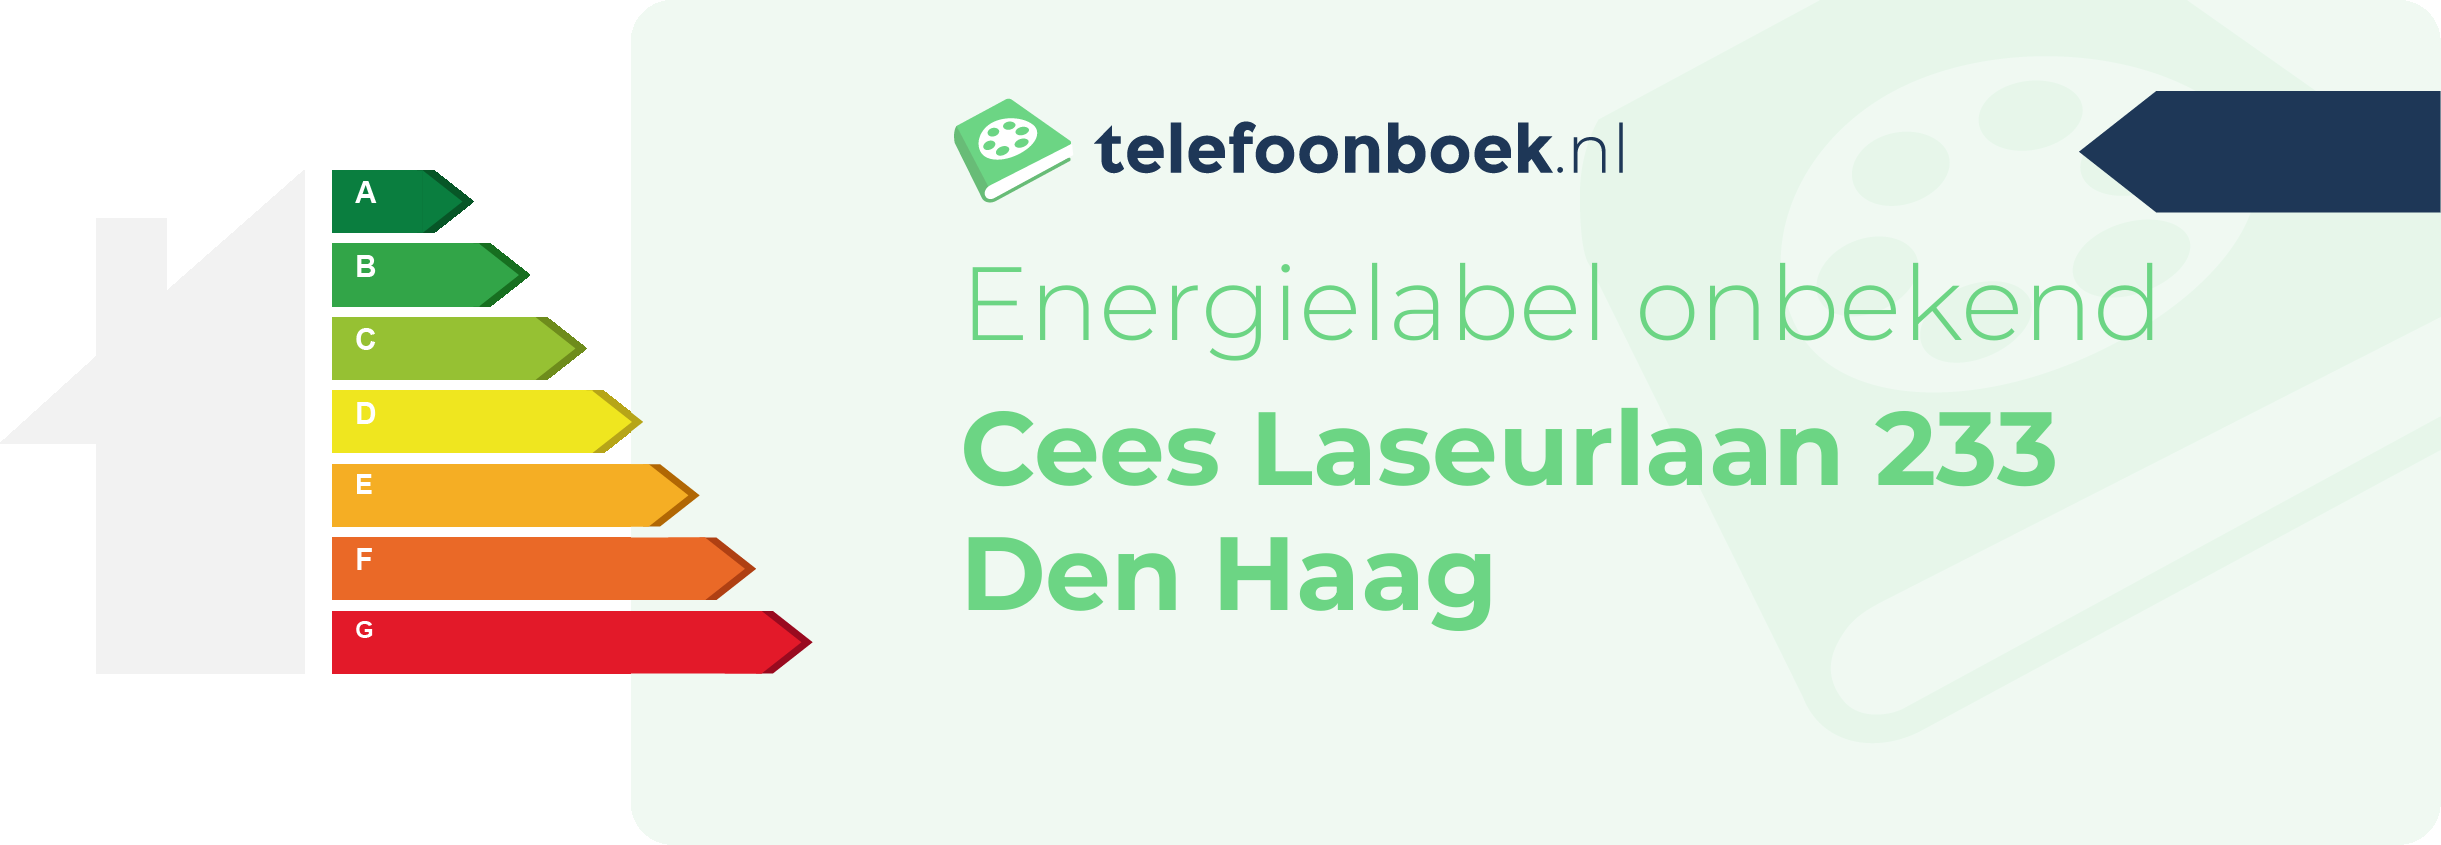 Energielabel Cees Laseurlaan 233 Den Haag